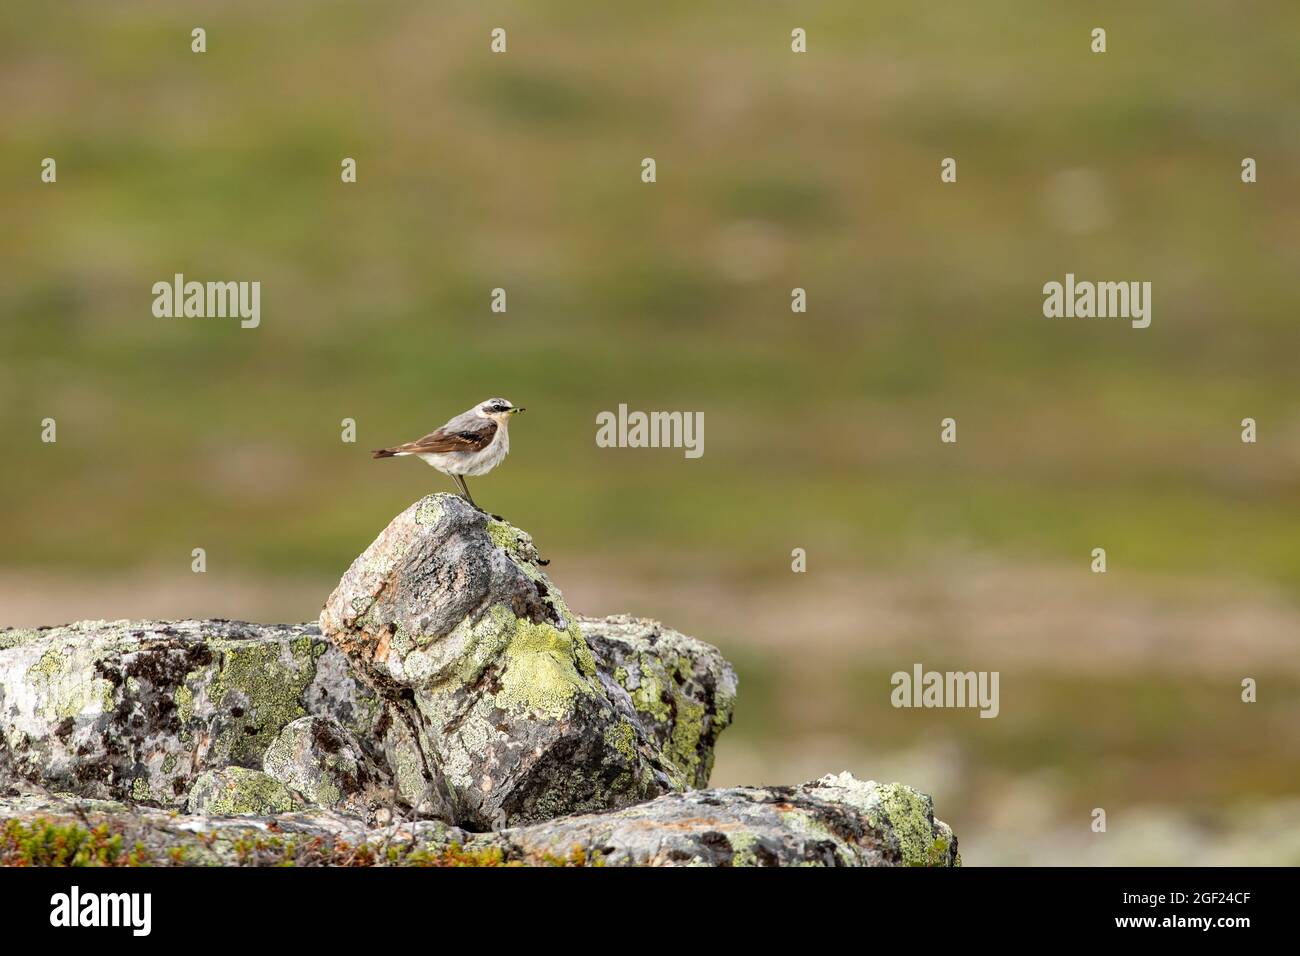 Small songbird, Northern wheatear (Oenanthe oenanthe) standing on the stone at Kiilopää, Northern Finland, Europe Stock Photo